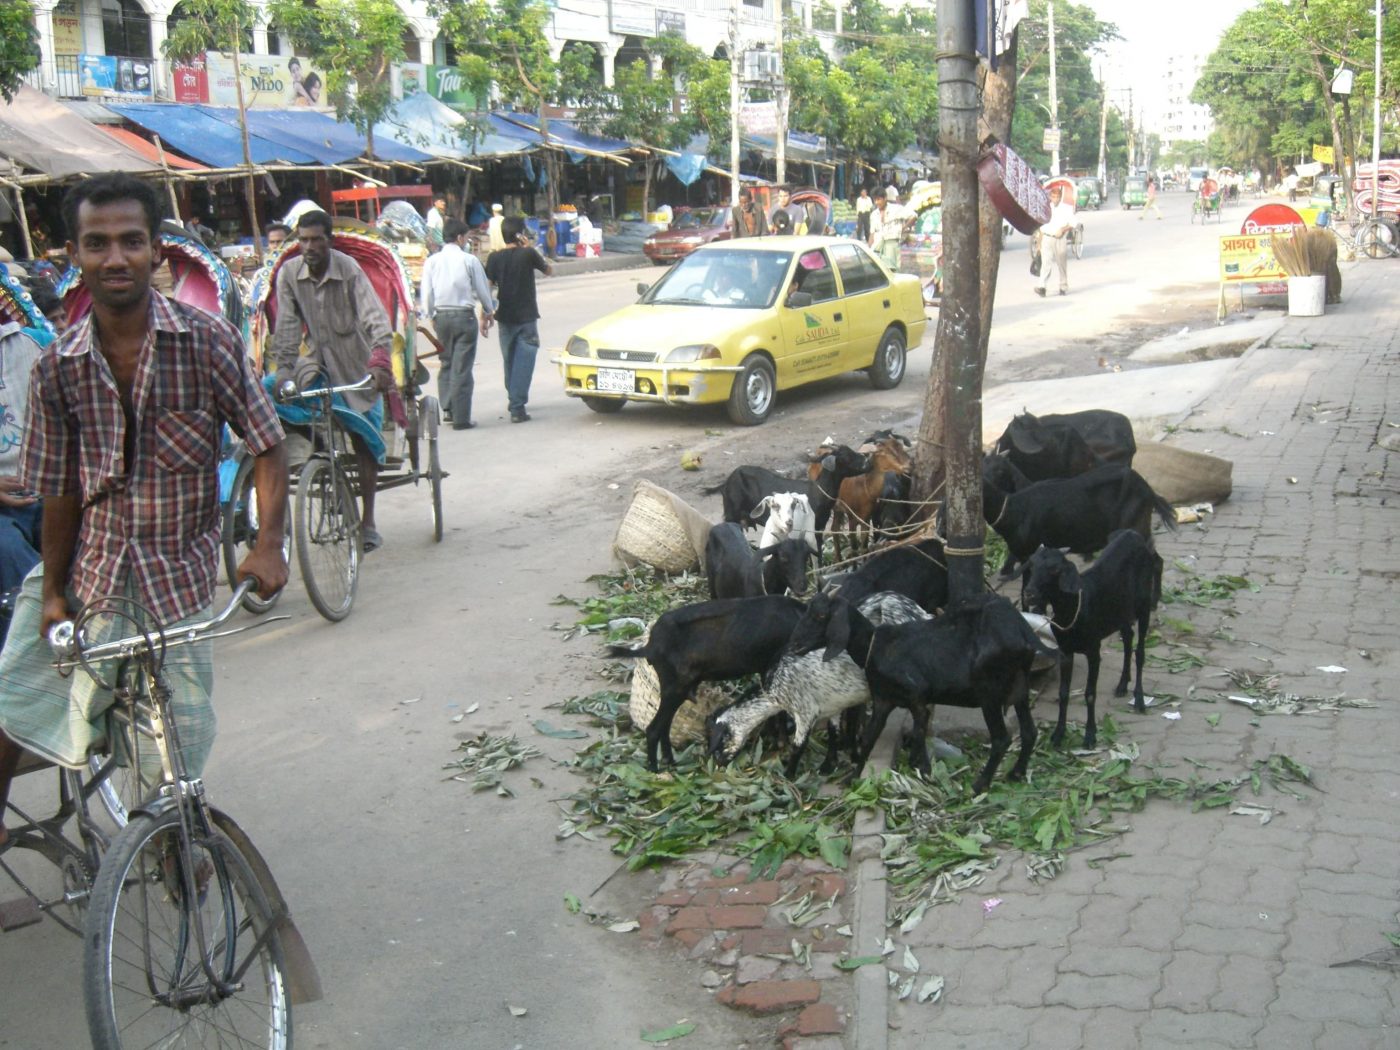 Goats-on-the-road-in-Dhaka-Bangladesh.jpg